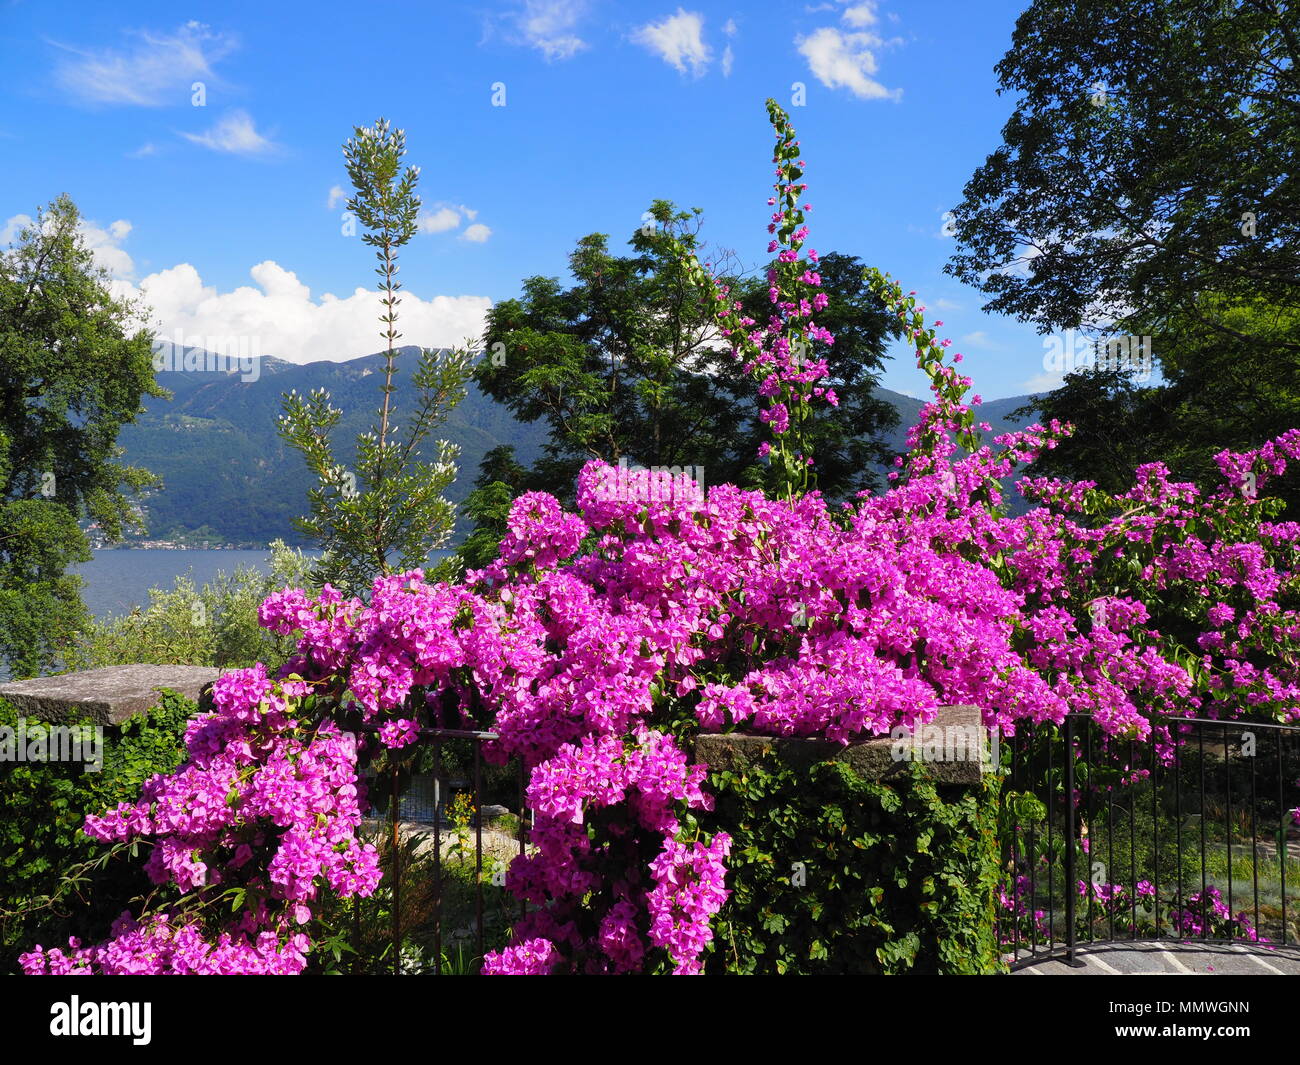 Lila Bougainvillea Blumen, exotische Pflanzen auf Insel Brissago, Schweiz  alpine Landschaften Blick auf Schweizer Lago Maggiore auf europäischer  Ascona Stadt, cle Stockfotografie - Alamy